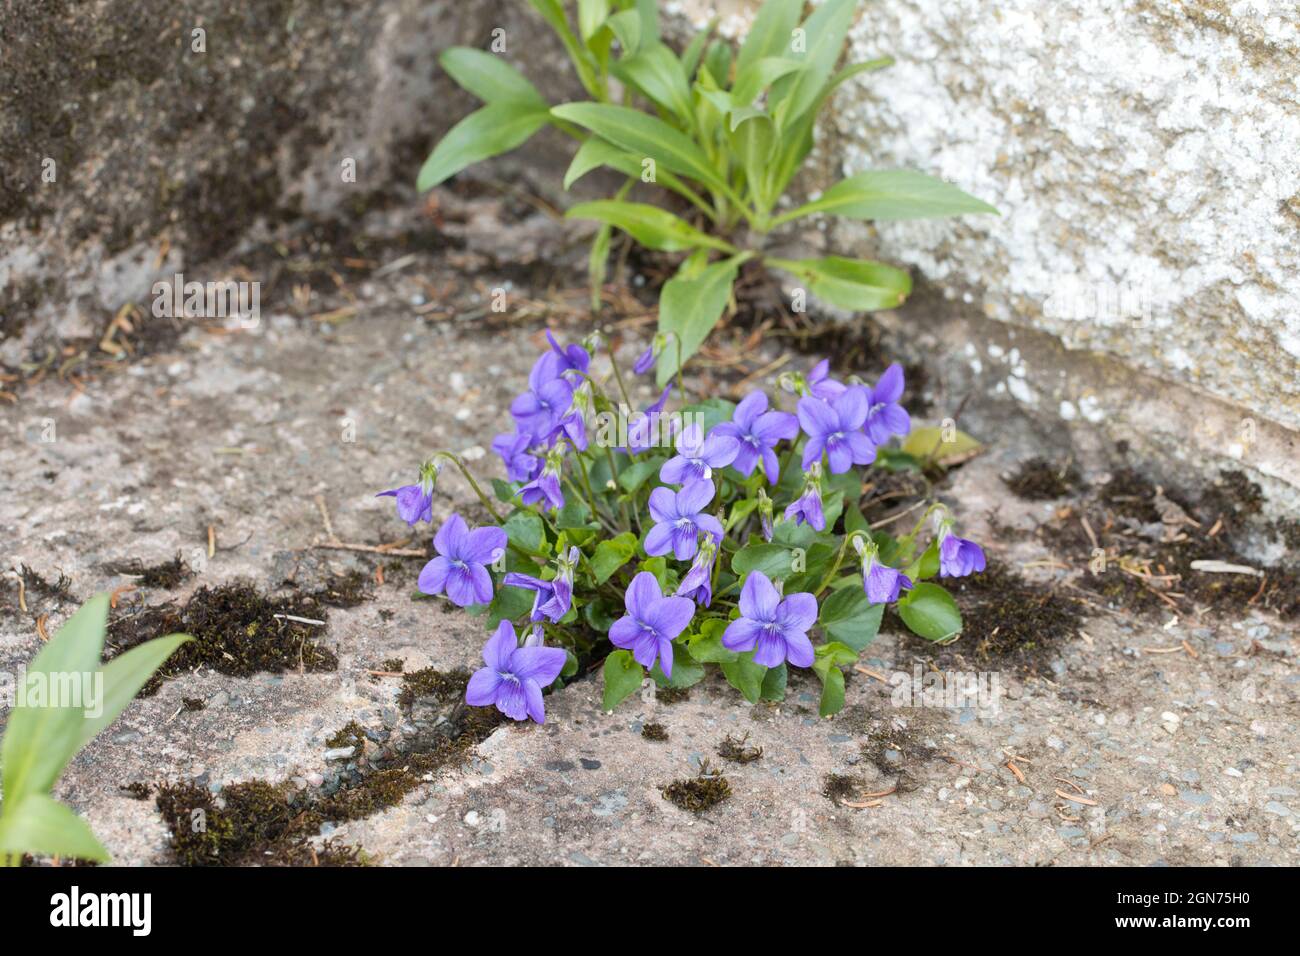 Gewöhnliches Hundviolett (Viola riviniana) blühend. Wächst durch einen Riss in Beton in einem Garten. Powys, Wales. April. Stockfoto